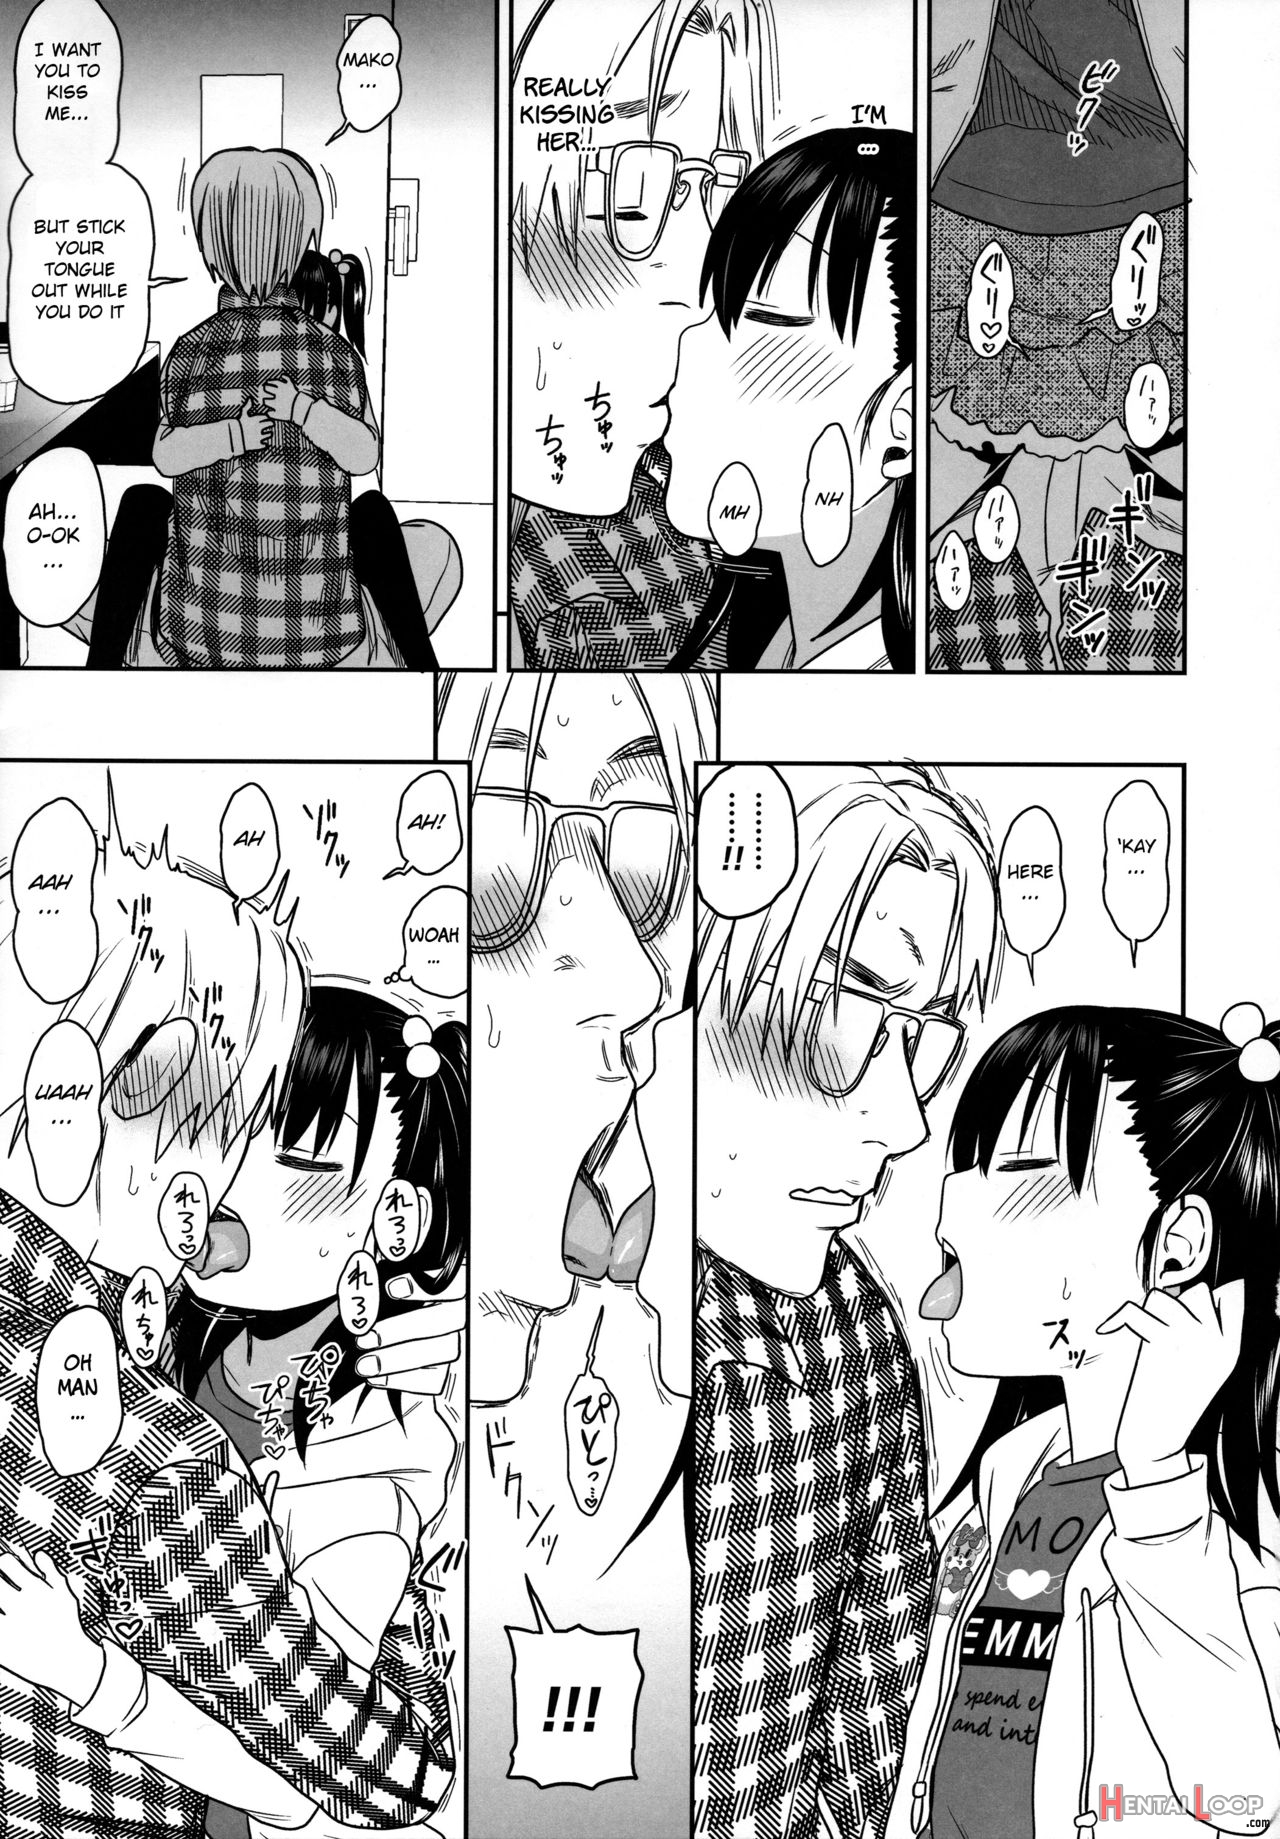 Tonari No Mako-chan Season 2 Vol. 2 page 19